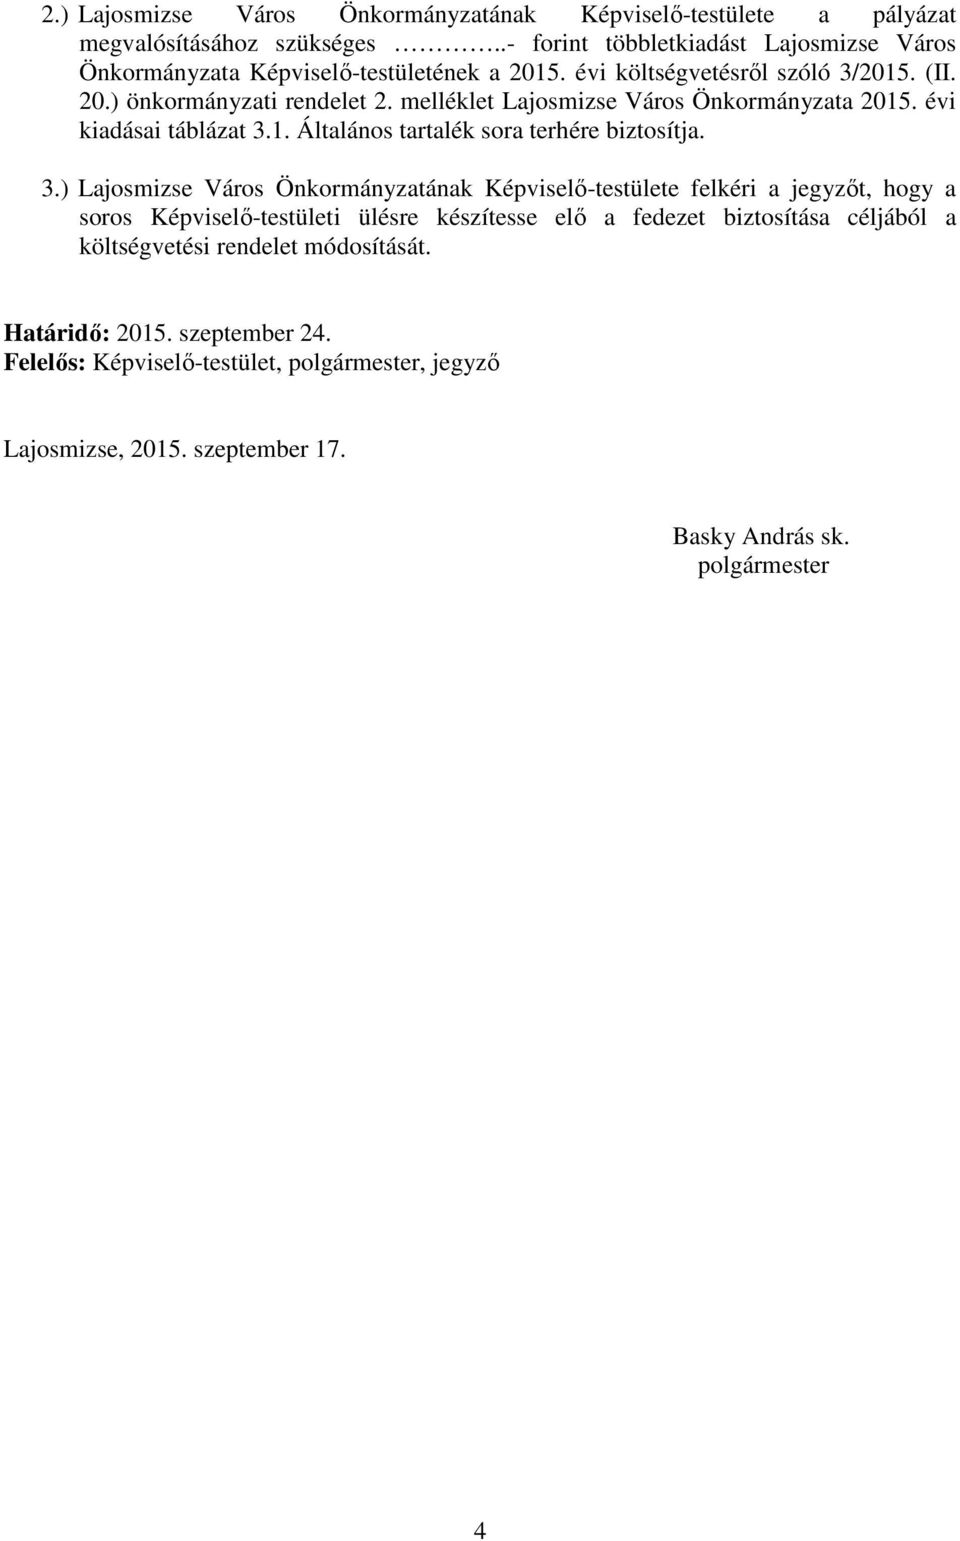 melléklet Lajosmizse Város Önkormányzata 2015. évi kiadásai táblázat 3.